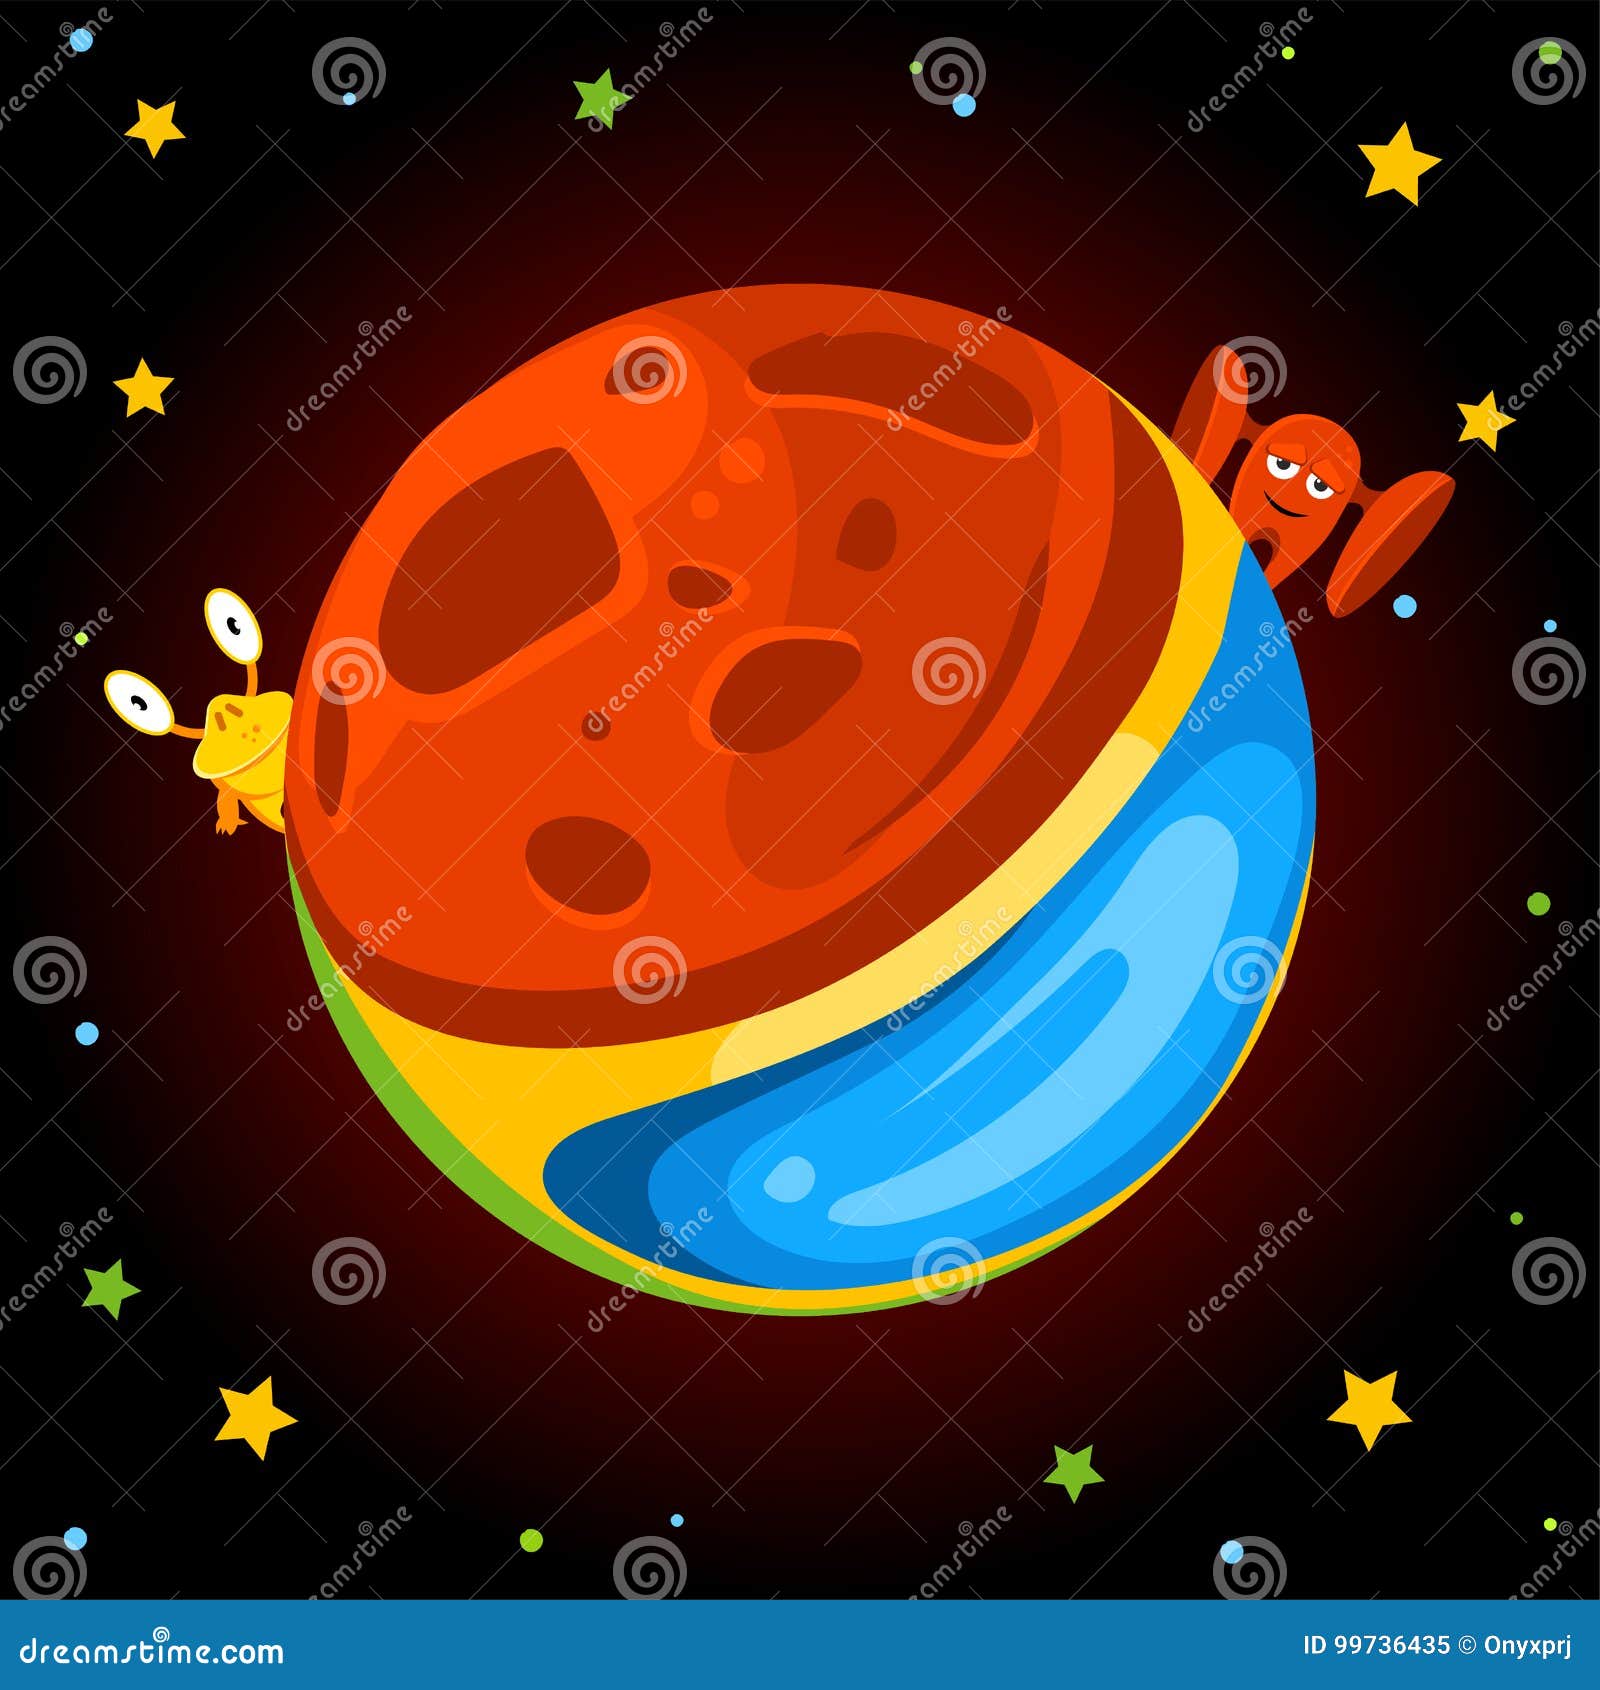 Pluto cartoon planet. Мультяшные планеты плоские. Планеты из мультика нарисованы. Рисунок из мультфильмов про планеты.